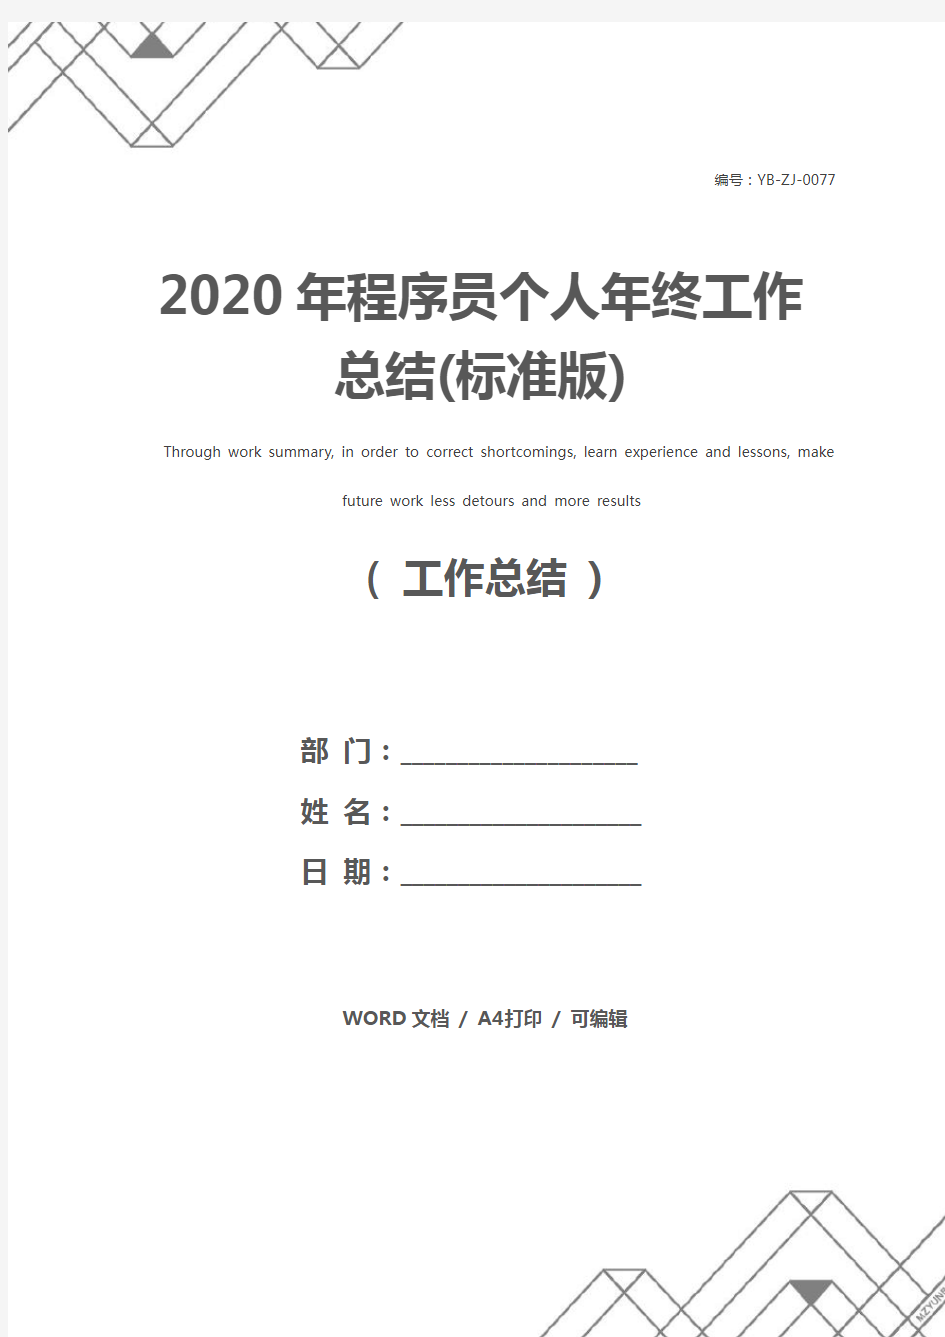 2020年程序员个人年终工作总结(标准版)